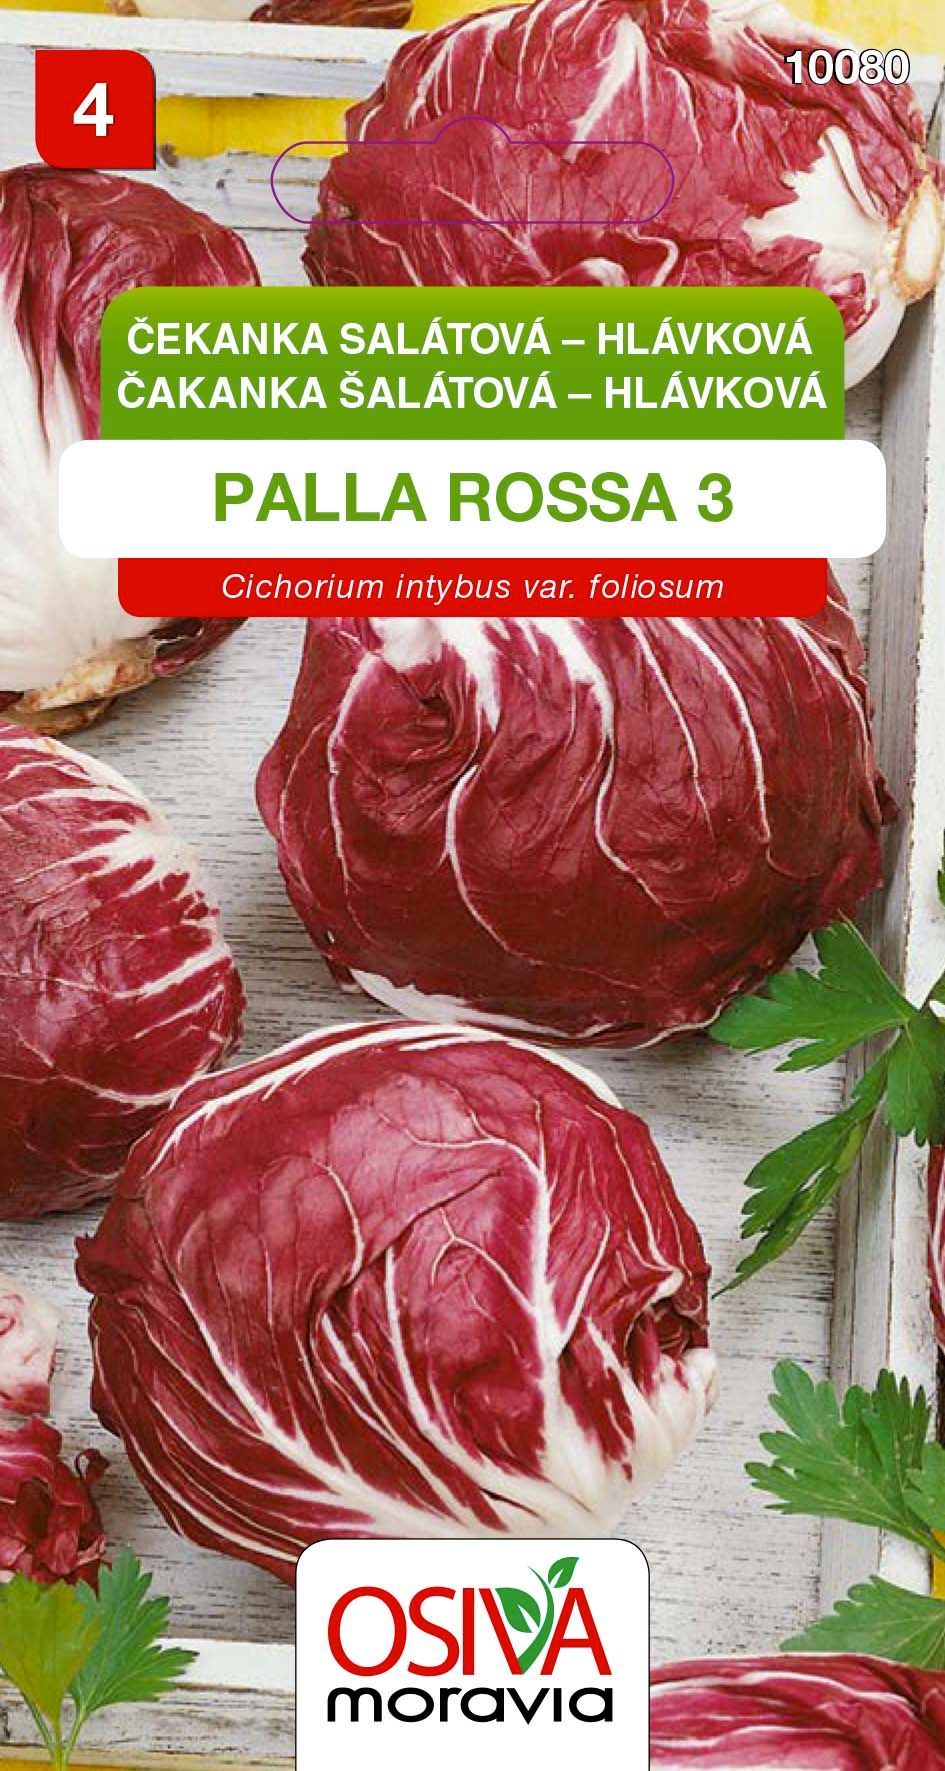 Čekanka salátová - hlávková - Palla Rossa 3